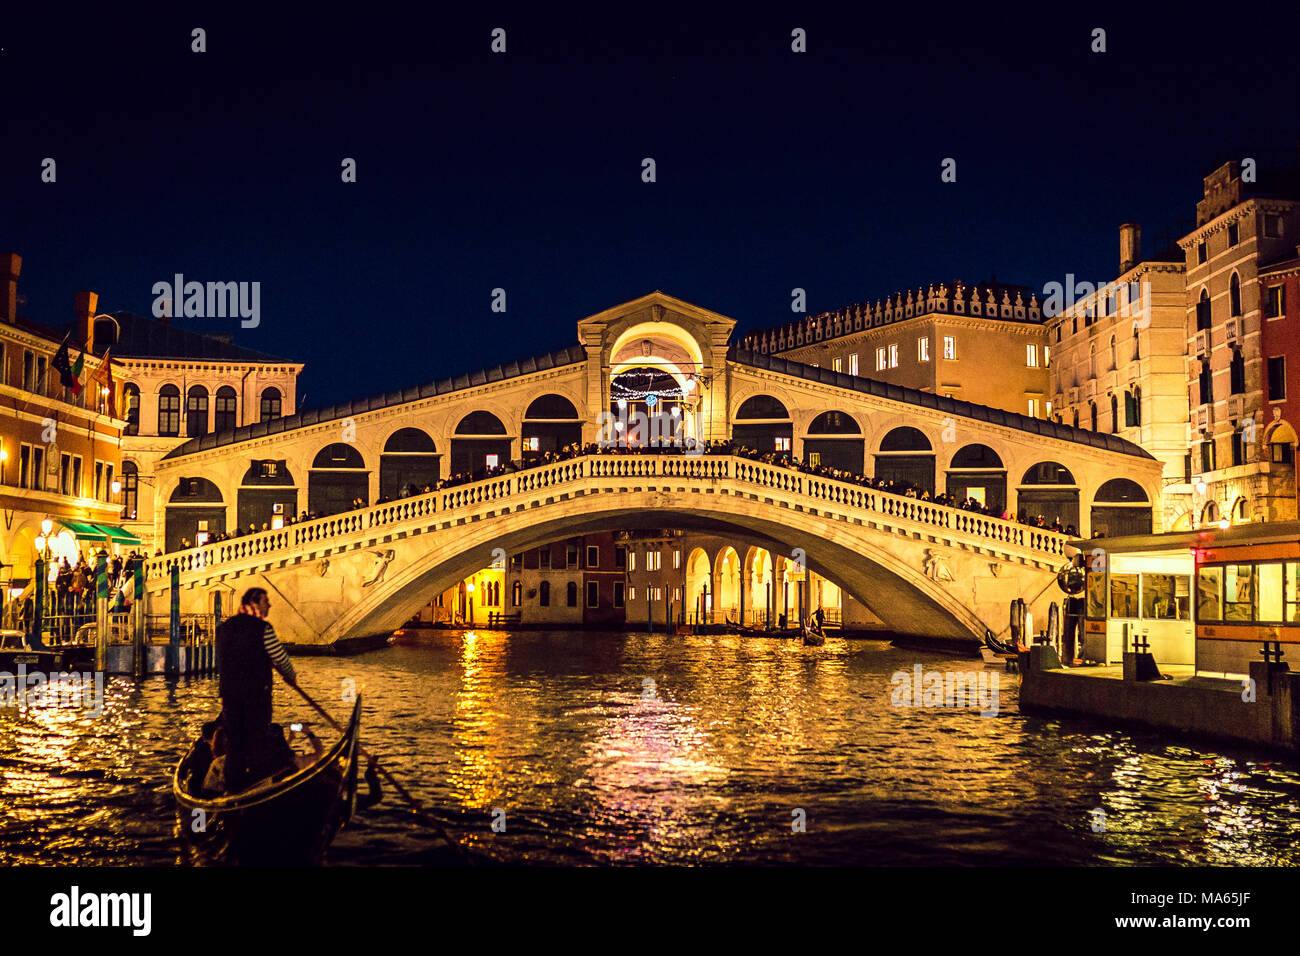 Venice (Italy) - Gondola near Rialto Bridge in Venice at night Stock Photo